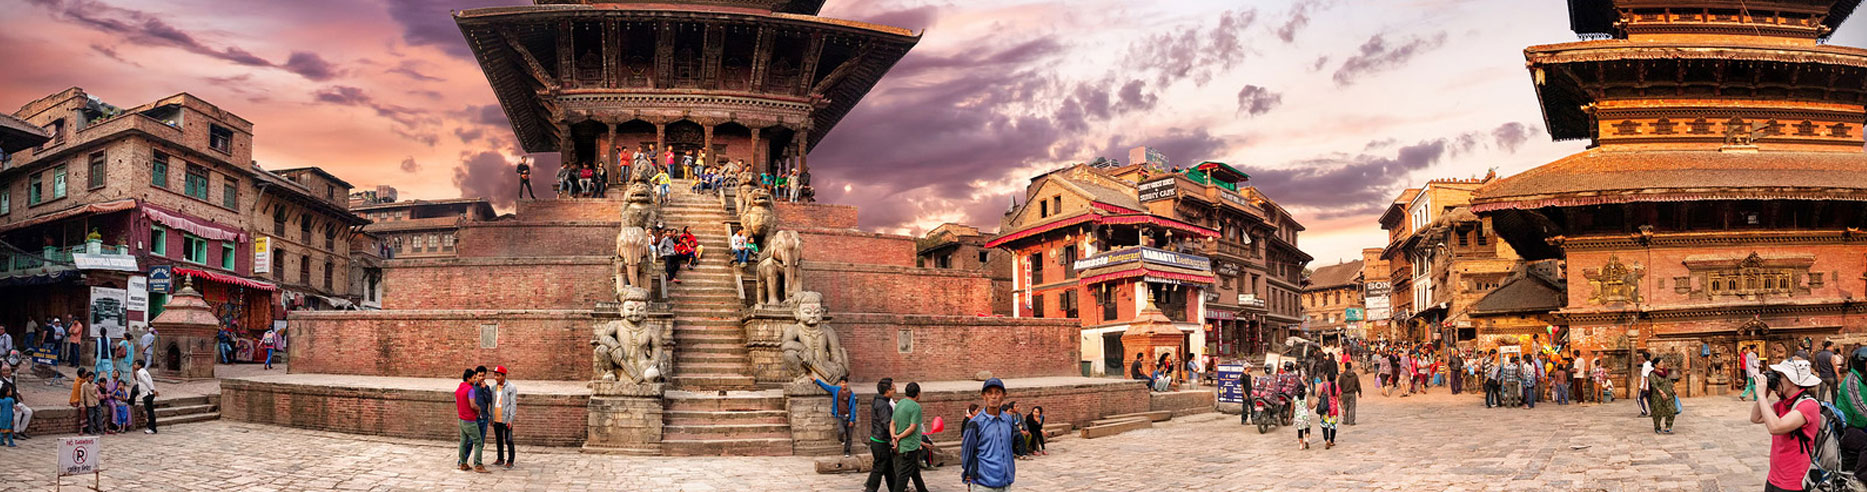 Kathmandu Pokhara Nagarkot